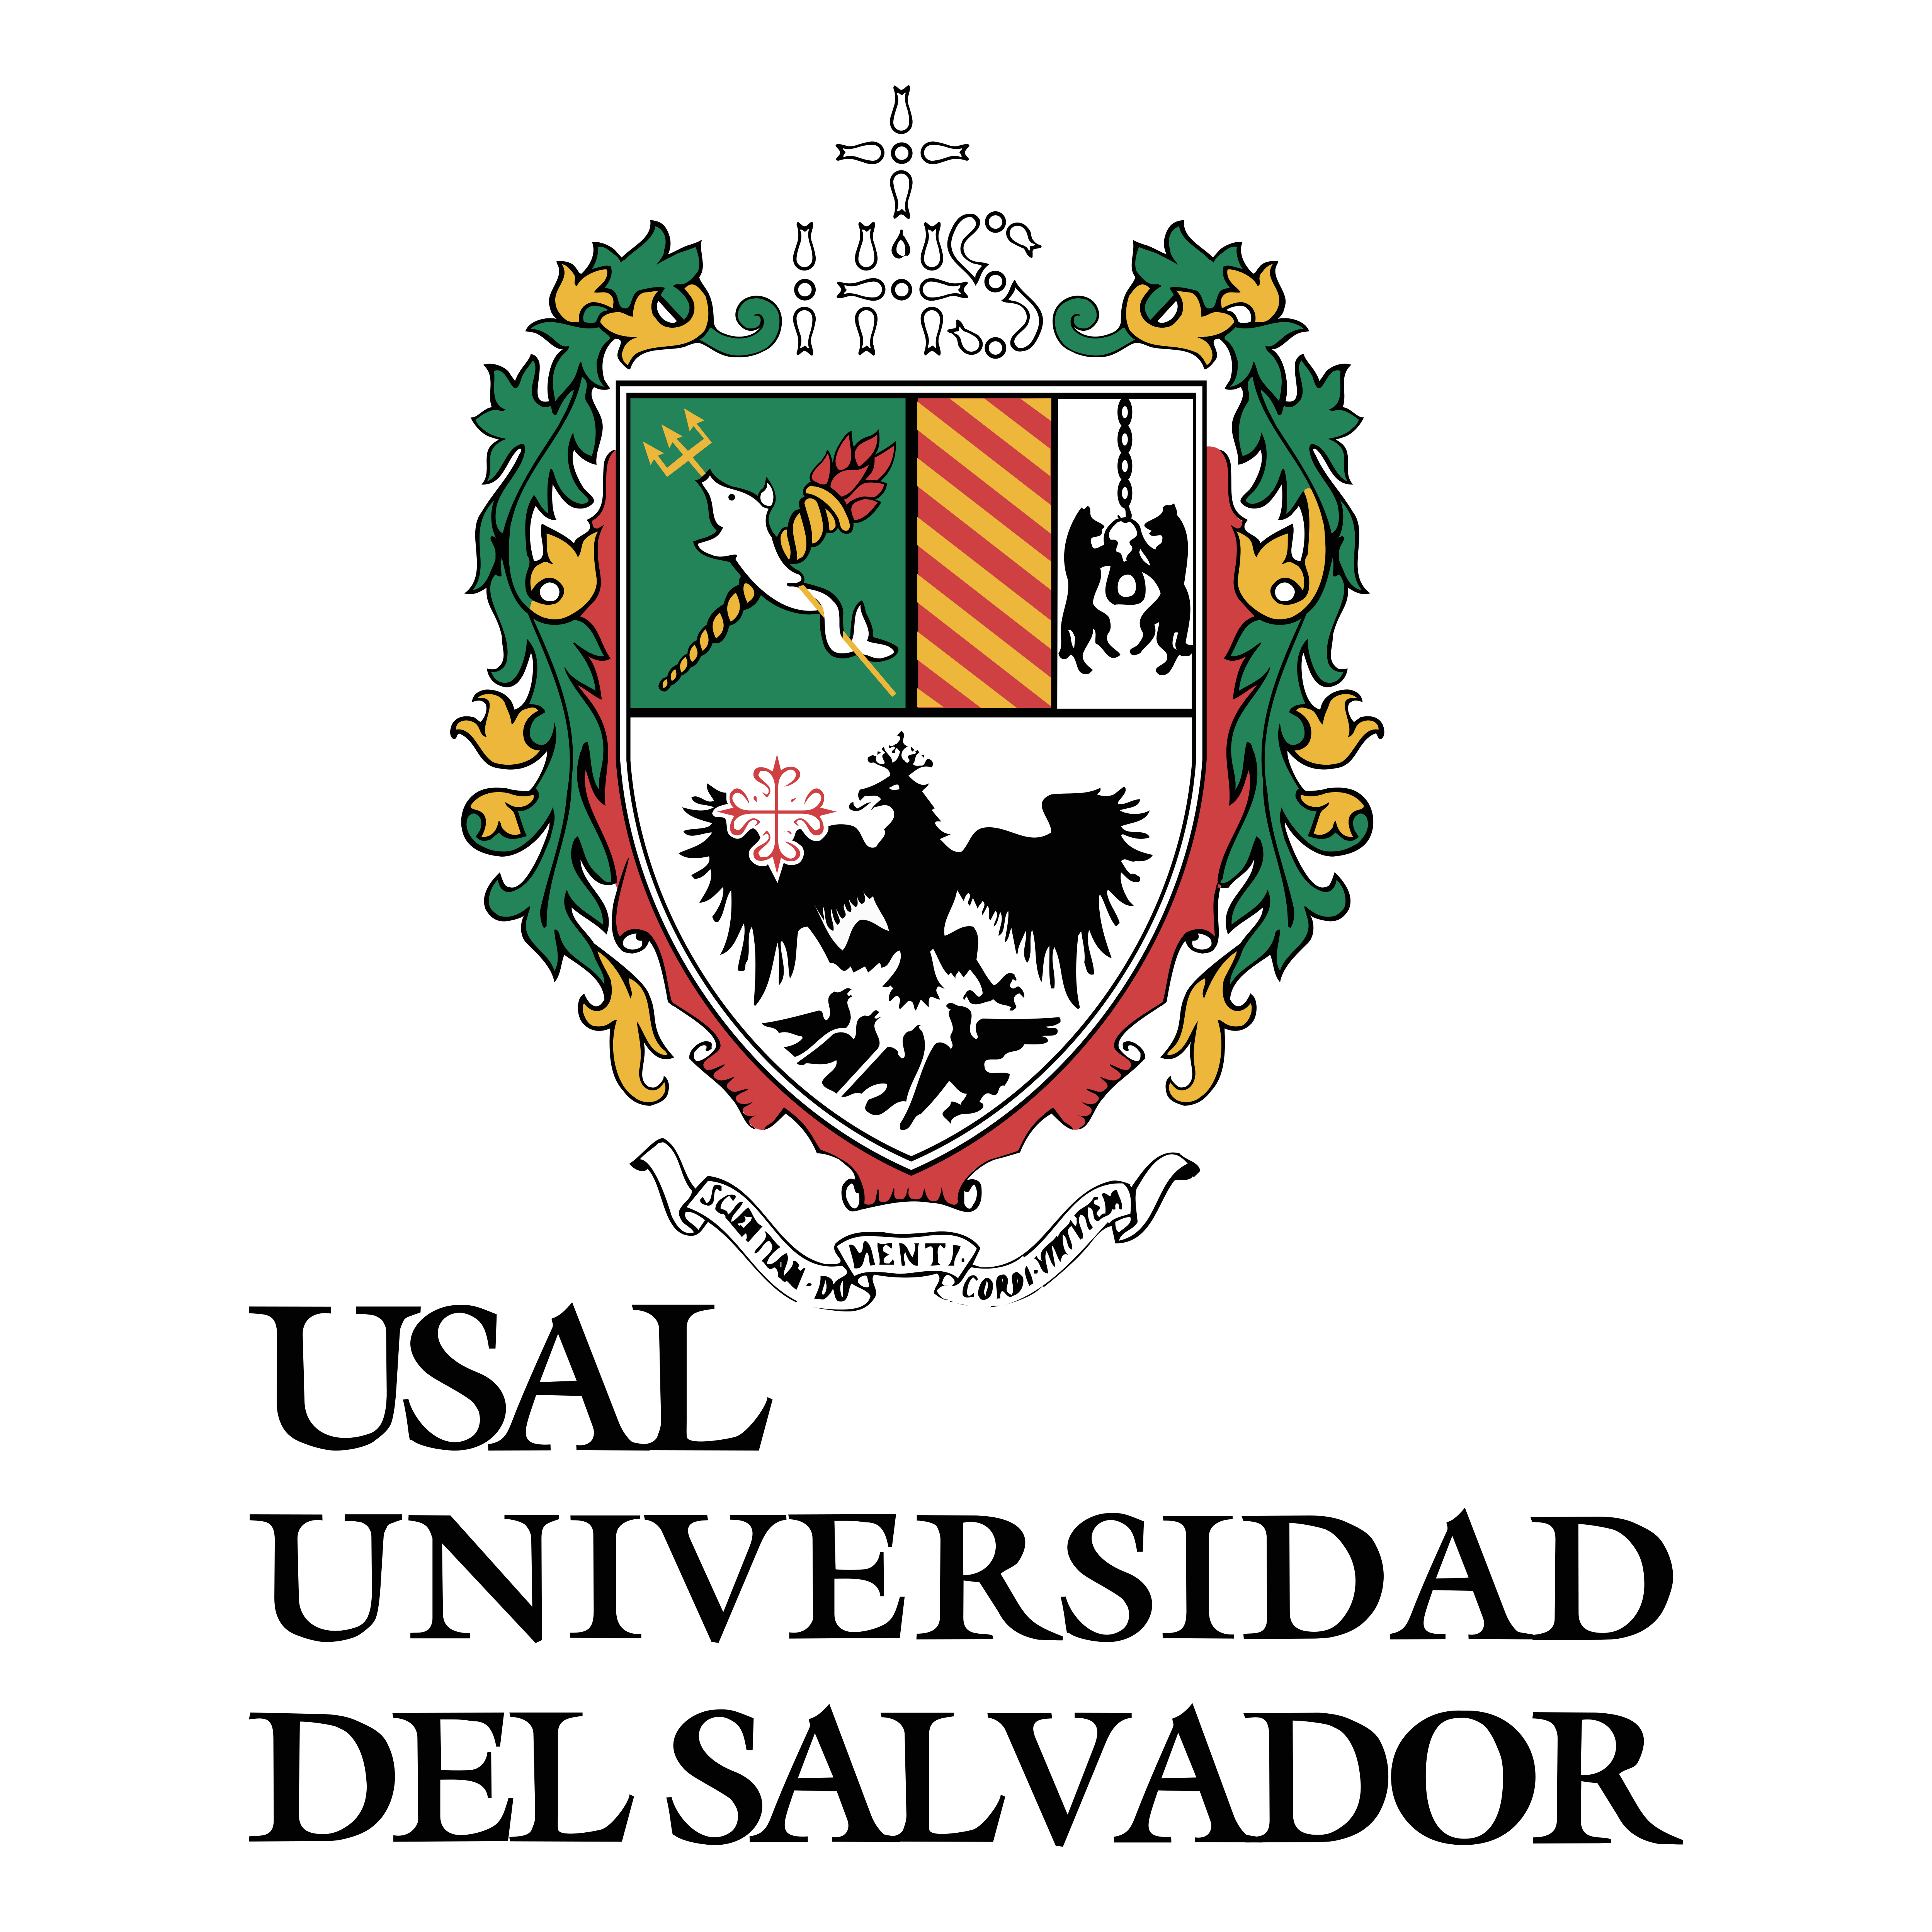 universidad-del-salvador-logo-oftalmosalud-doctores-oftalmologos-peru-1-1-1